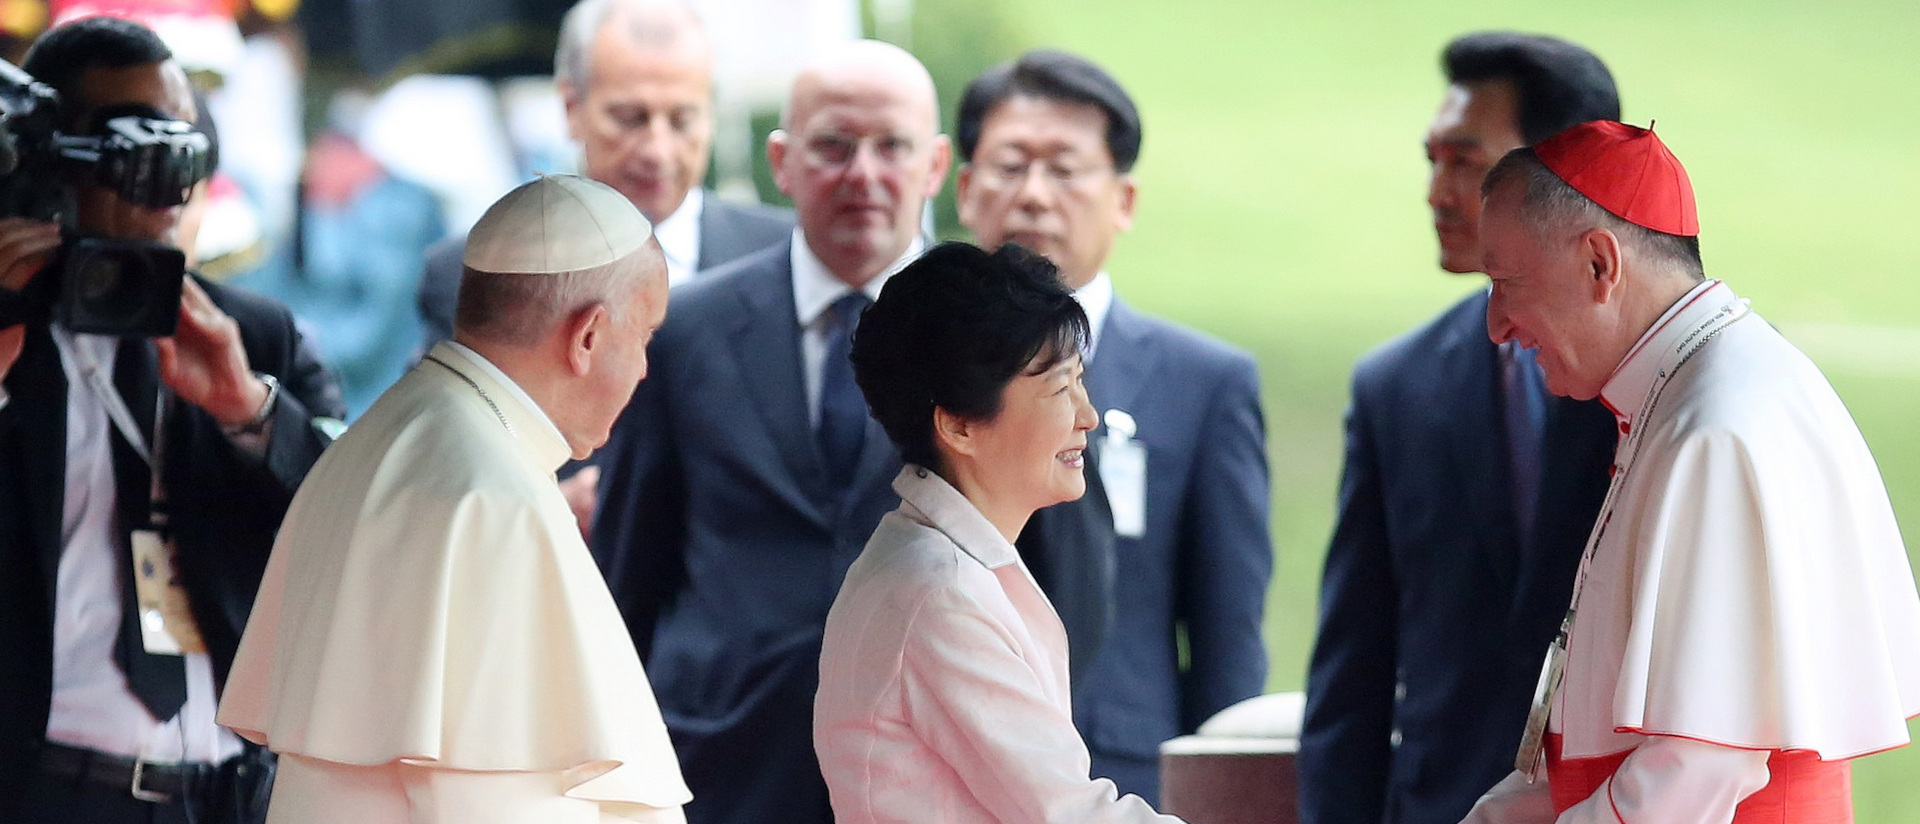 Ein Bild aus dem Jahre 2014: Park Geun-hye, damalige Präsidentin von Südkorea, mit Papst Franziskus und Pietro Parolin (rechts).